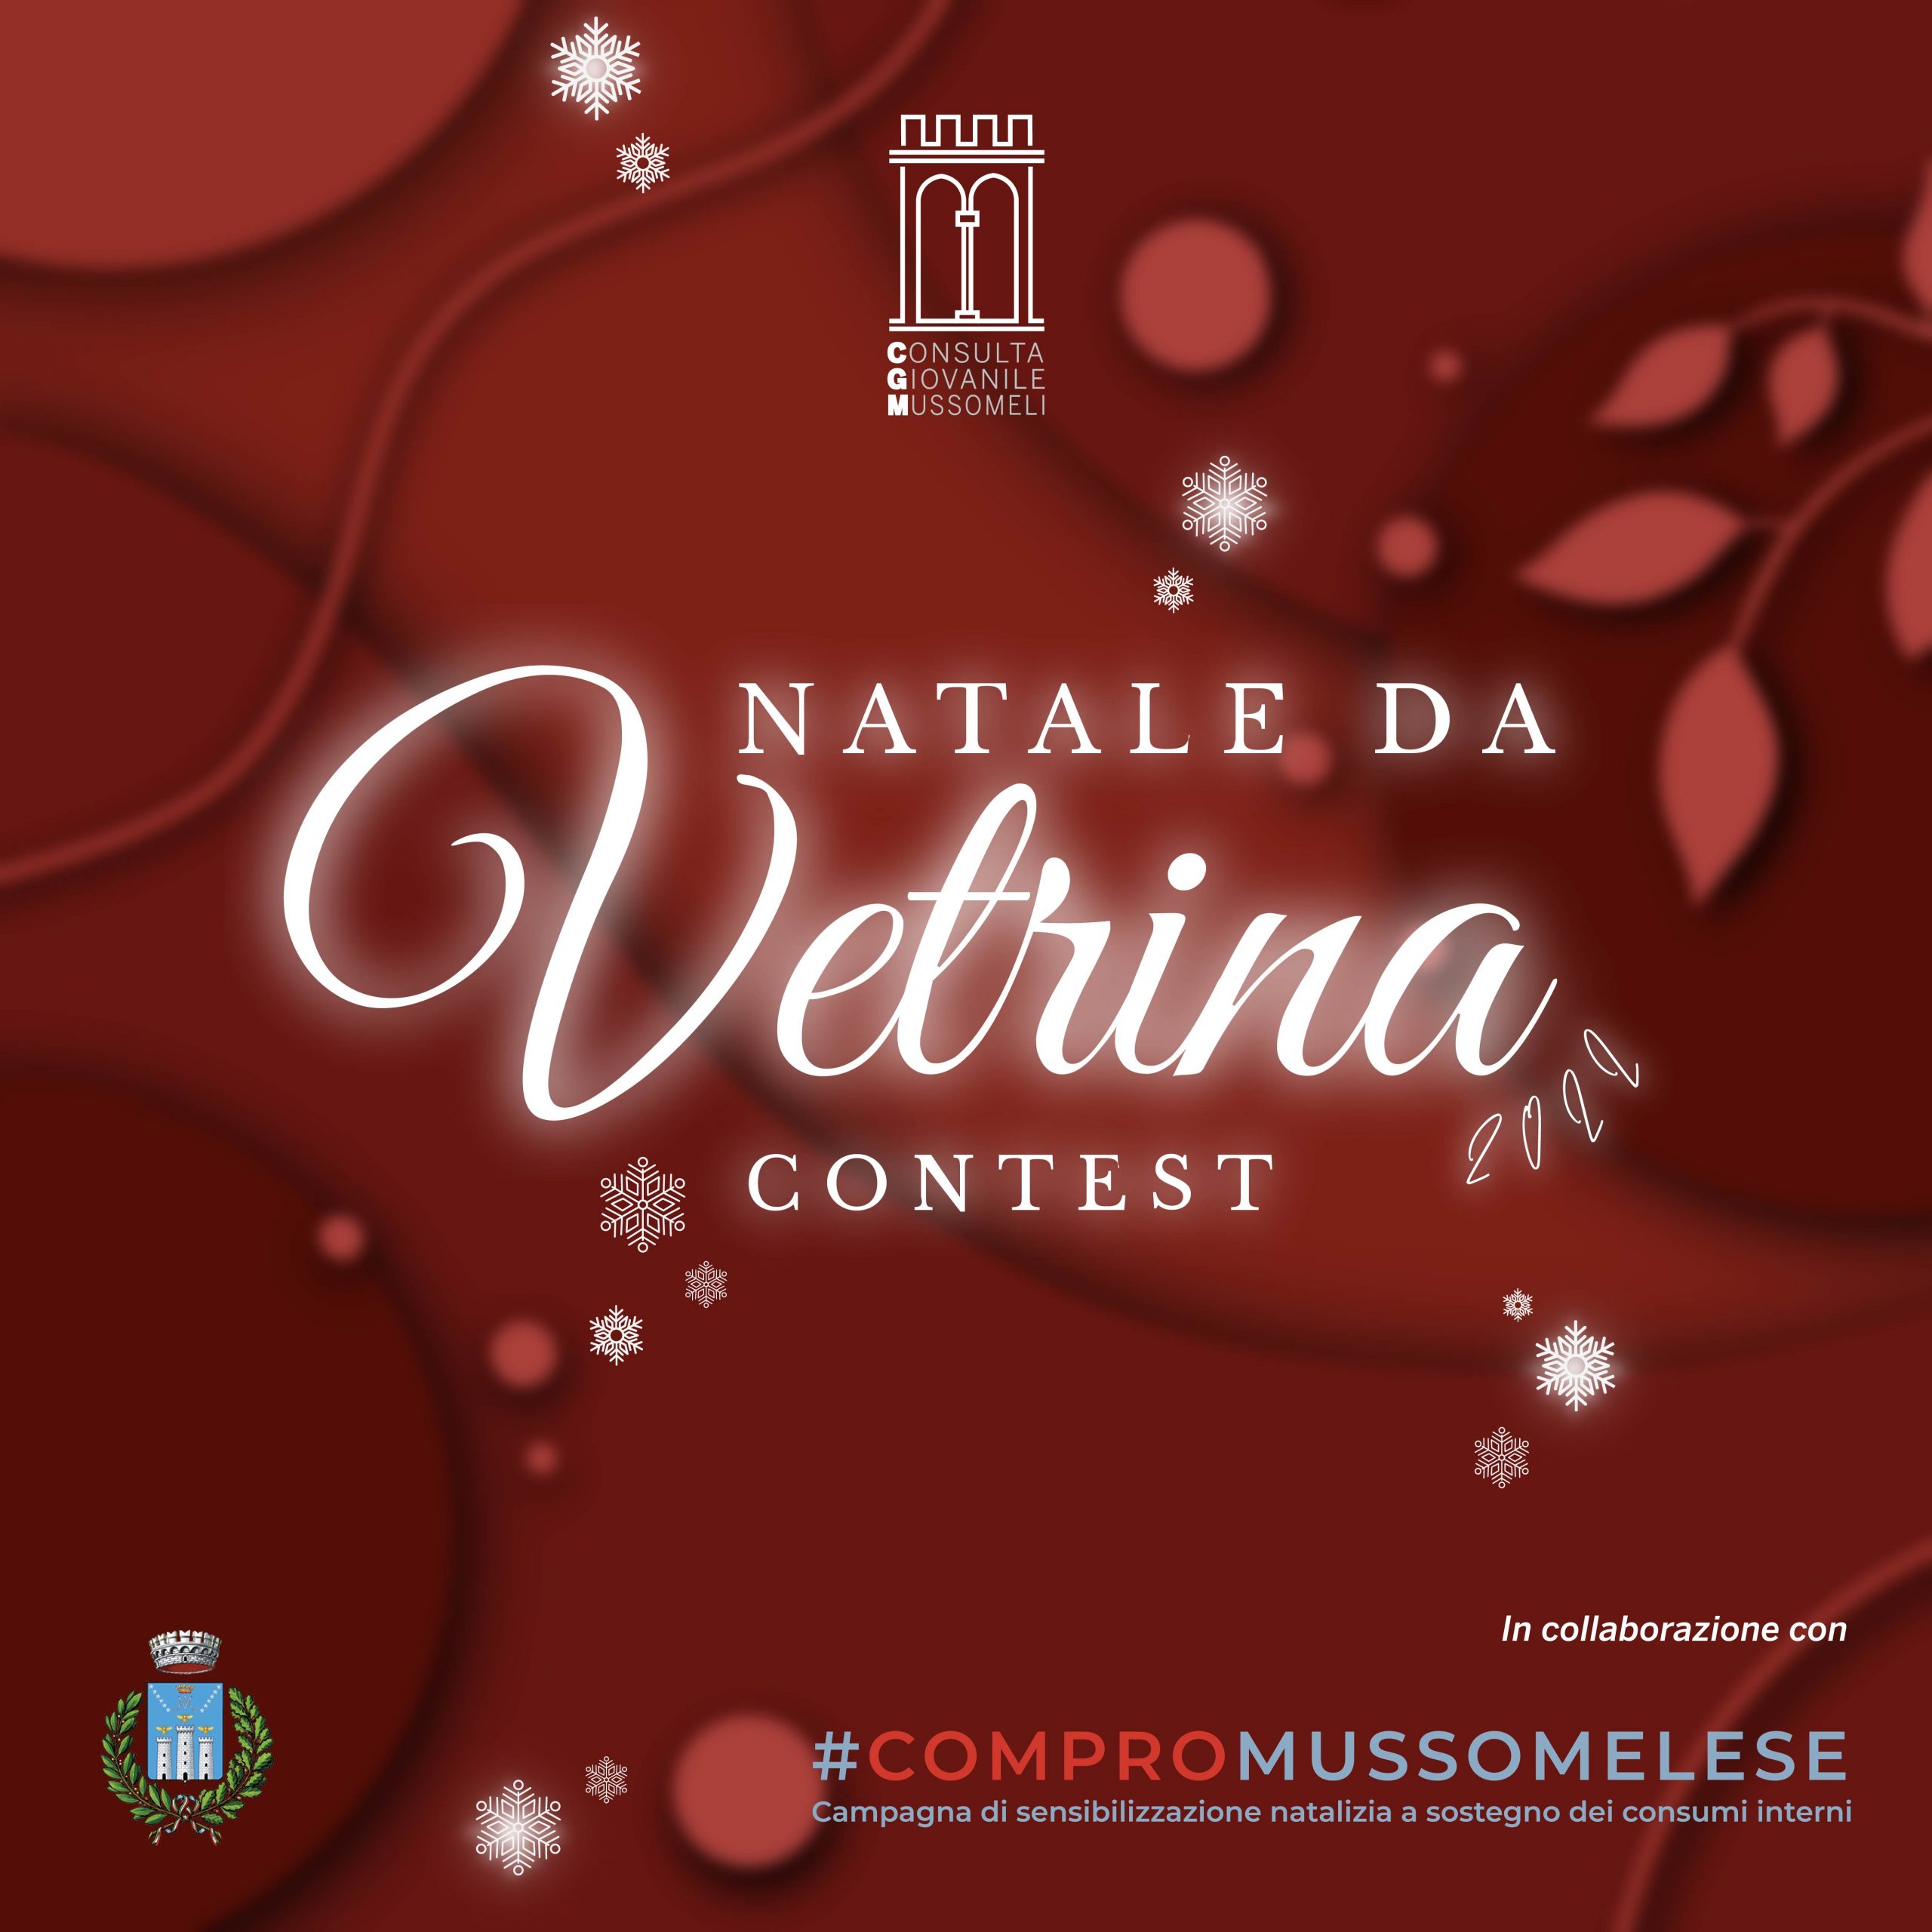 Mussomeli, Proposta della Consulta Giovanile: “2° edizione Natale da Vetrina 2022”